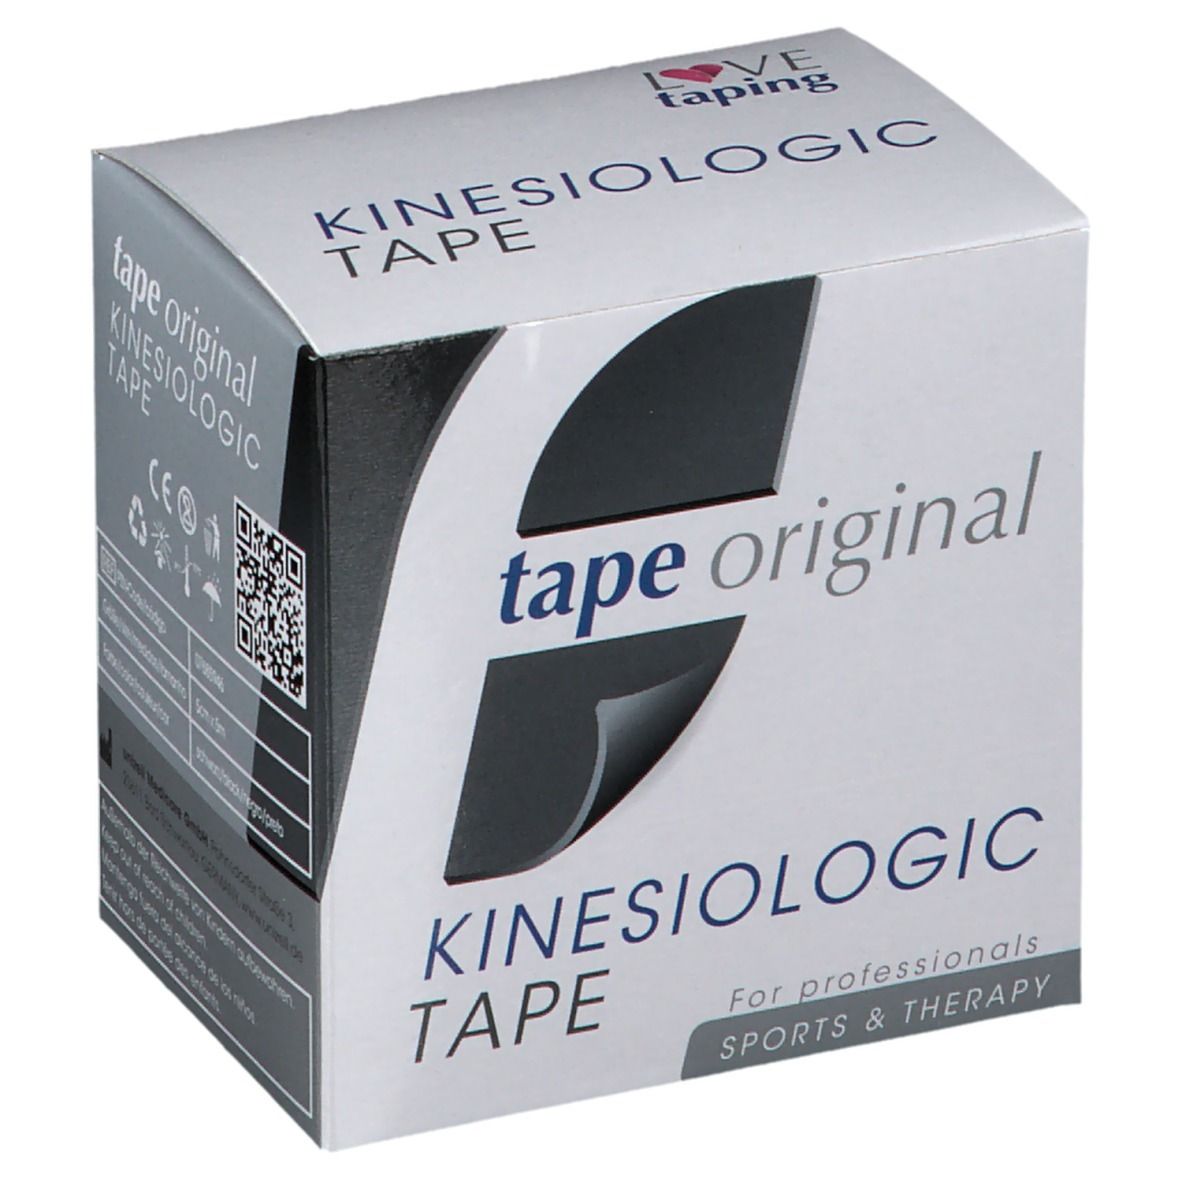 Kinesio tape original Kinesiologic Tape schwarz 5 cm x 5 m